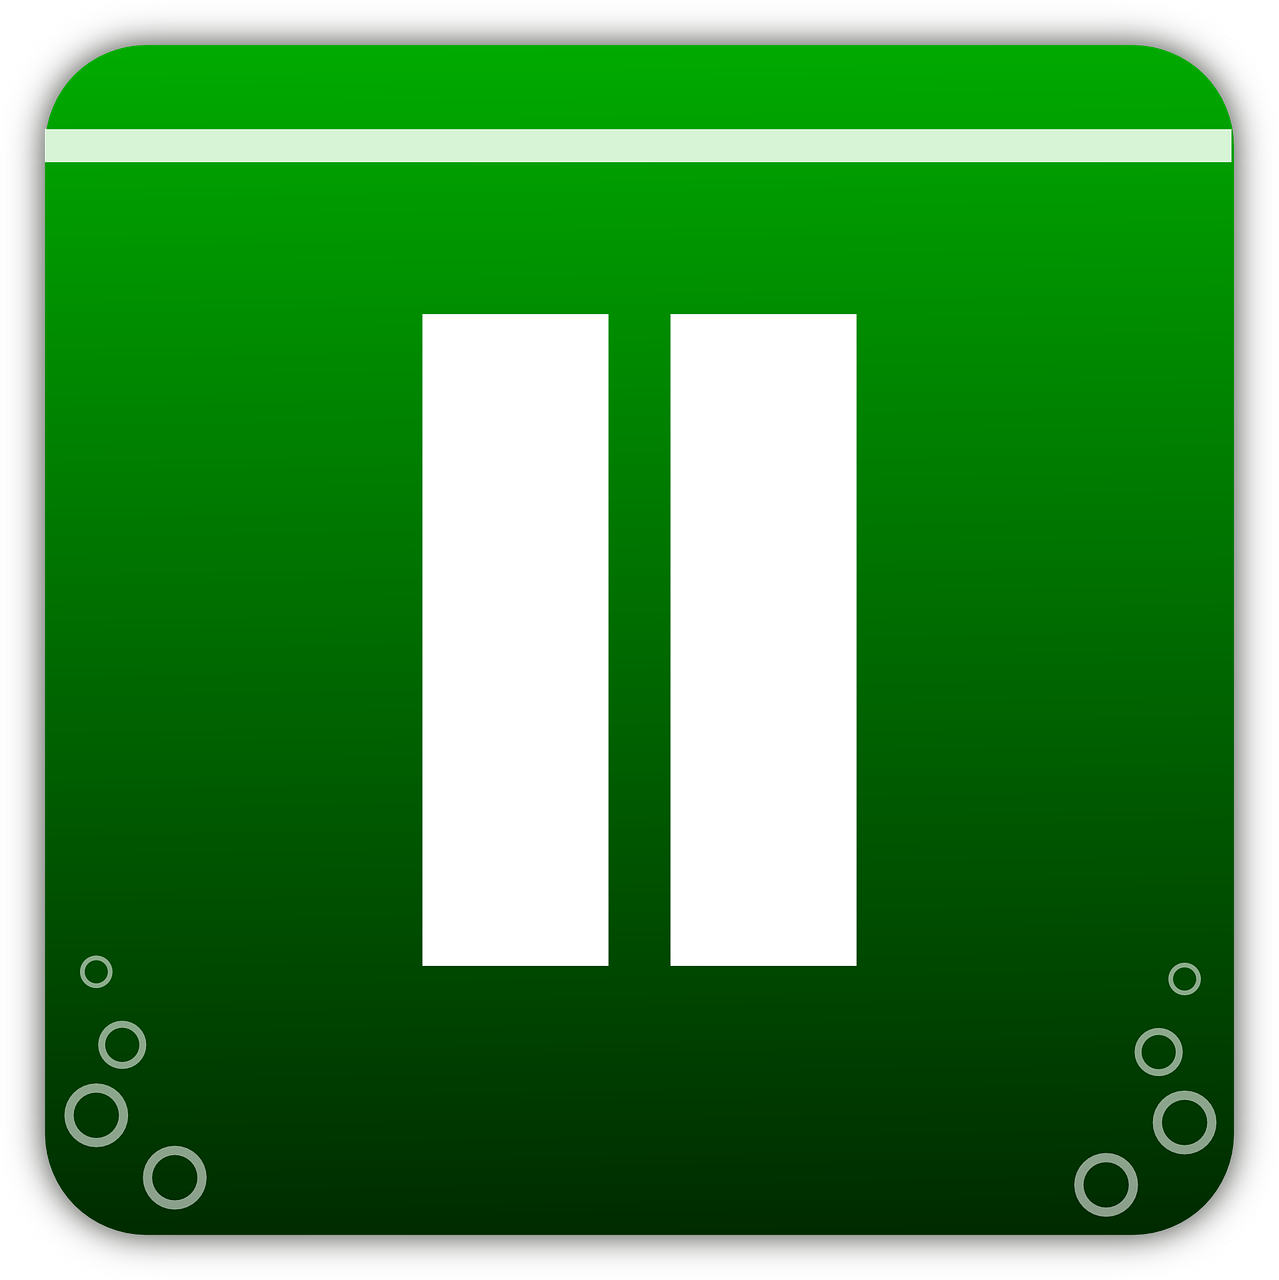 icon green button